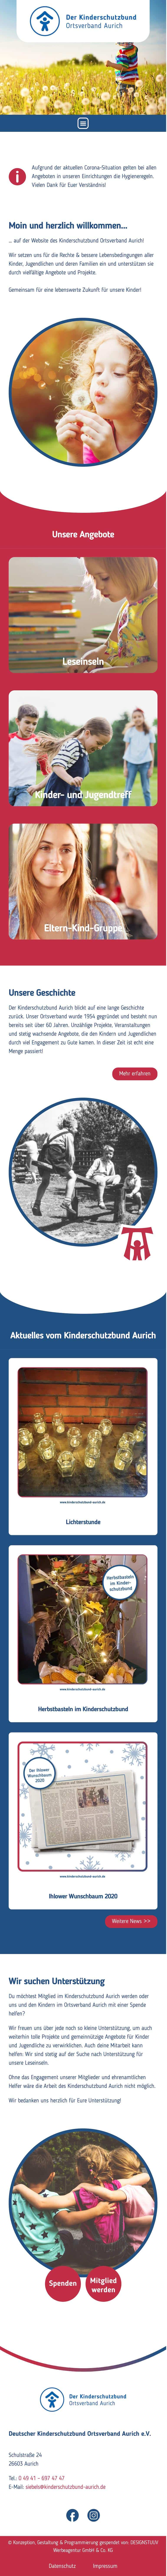 Kinderschutzbund-aurich-website-gestaltung